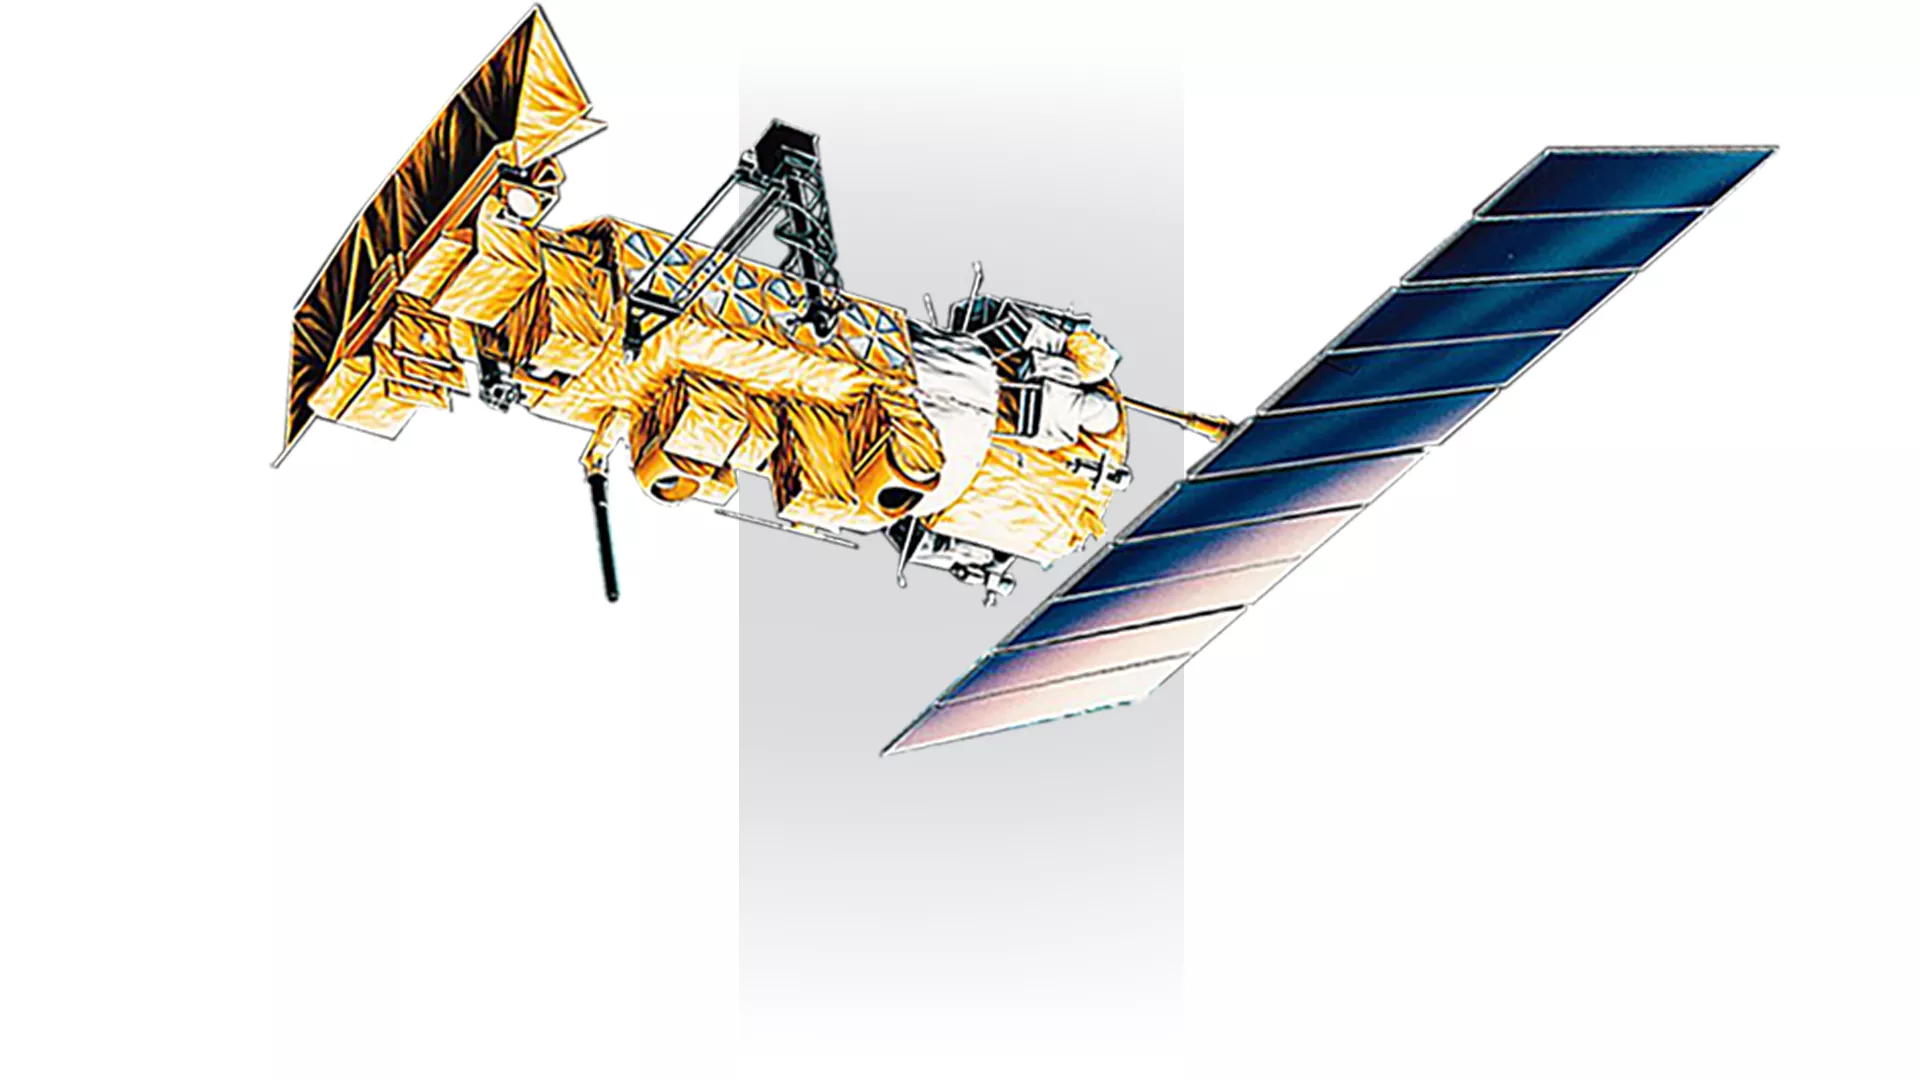 NOAA-8 satellite